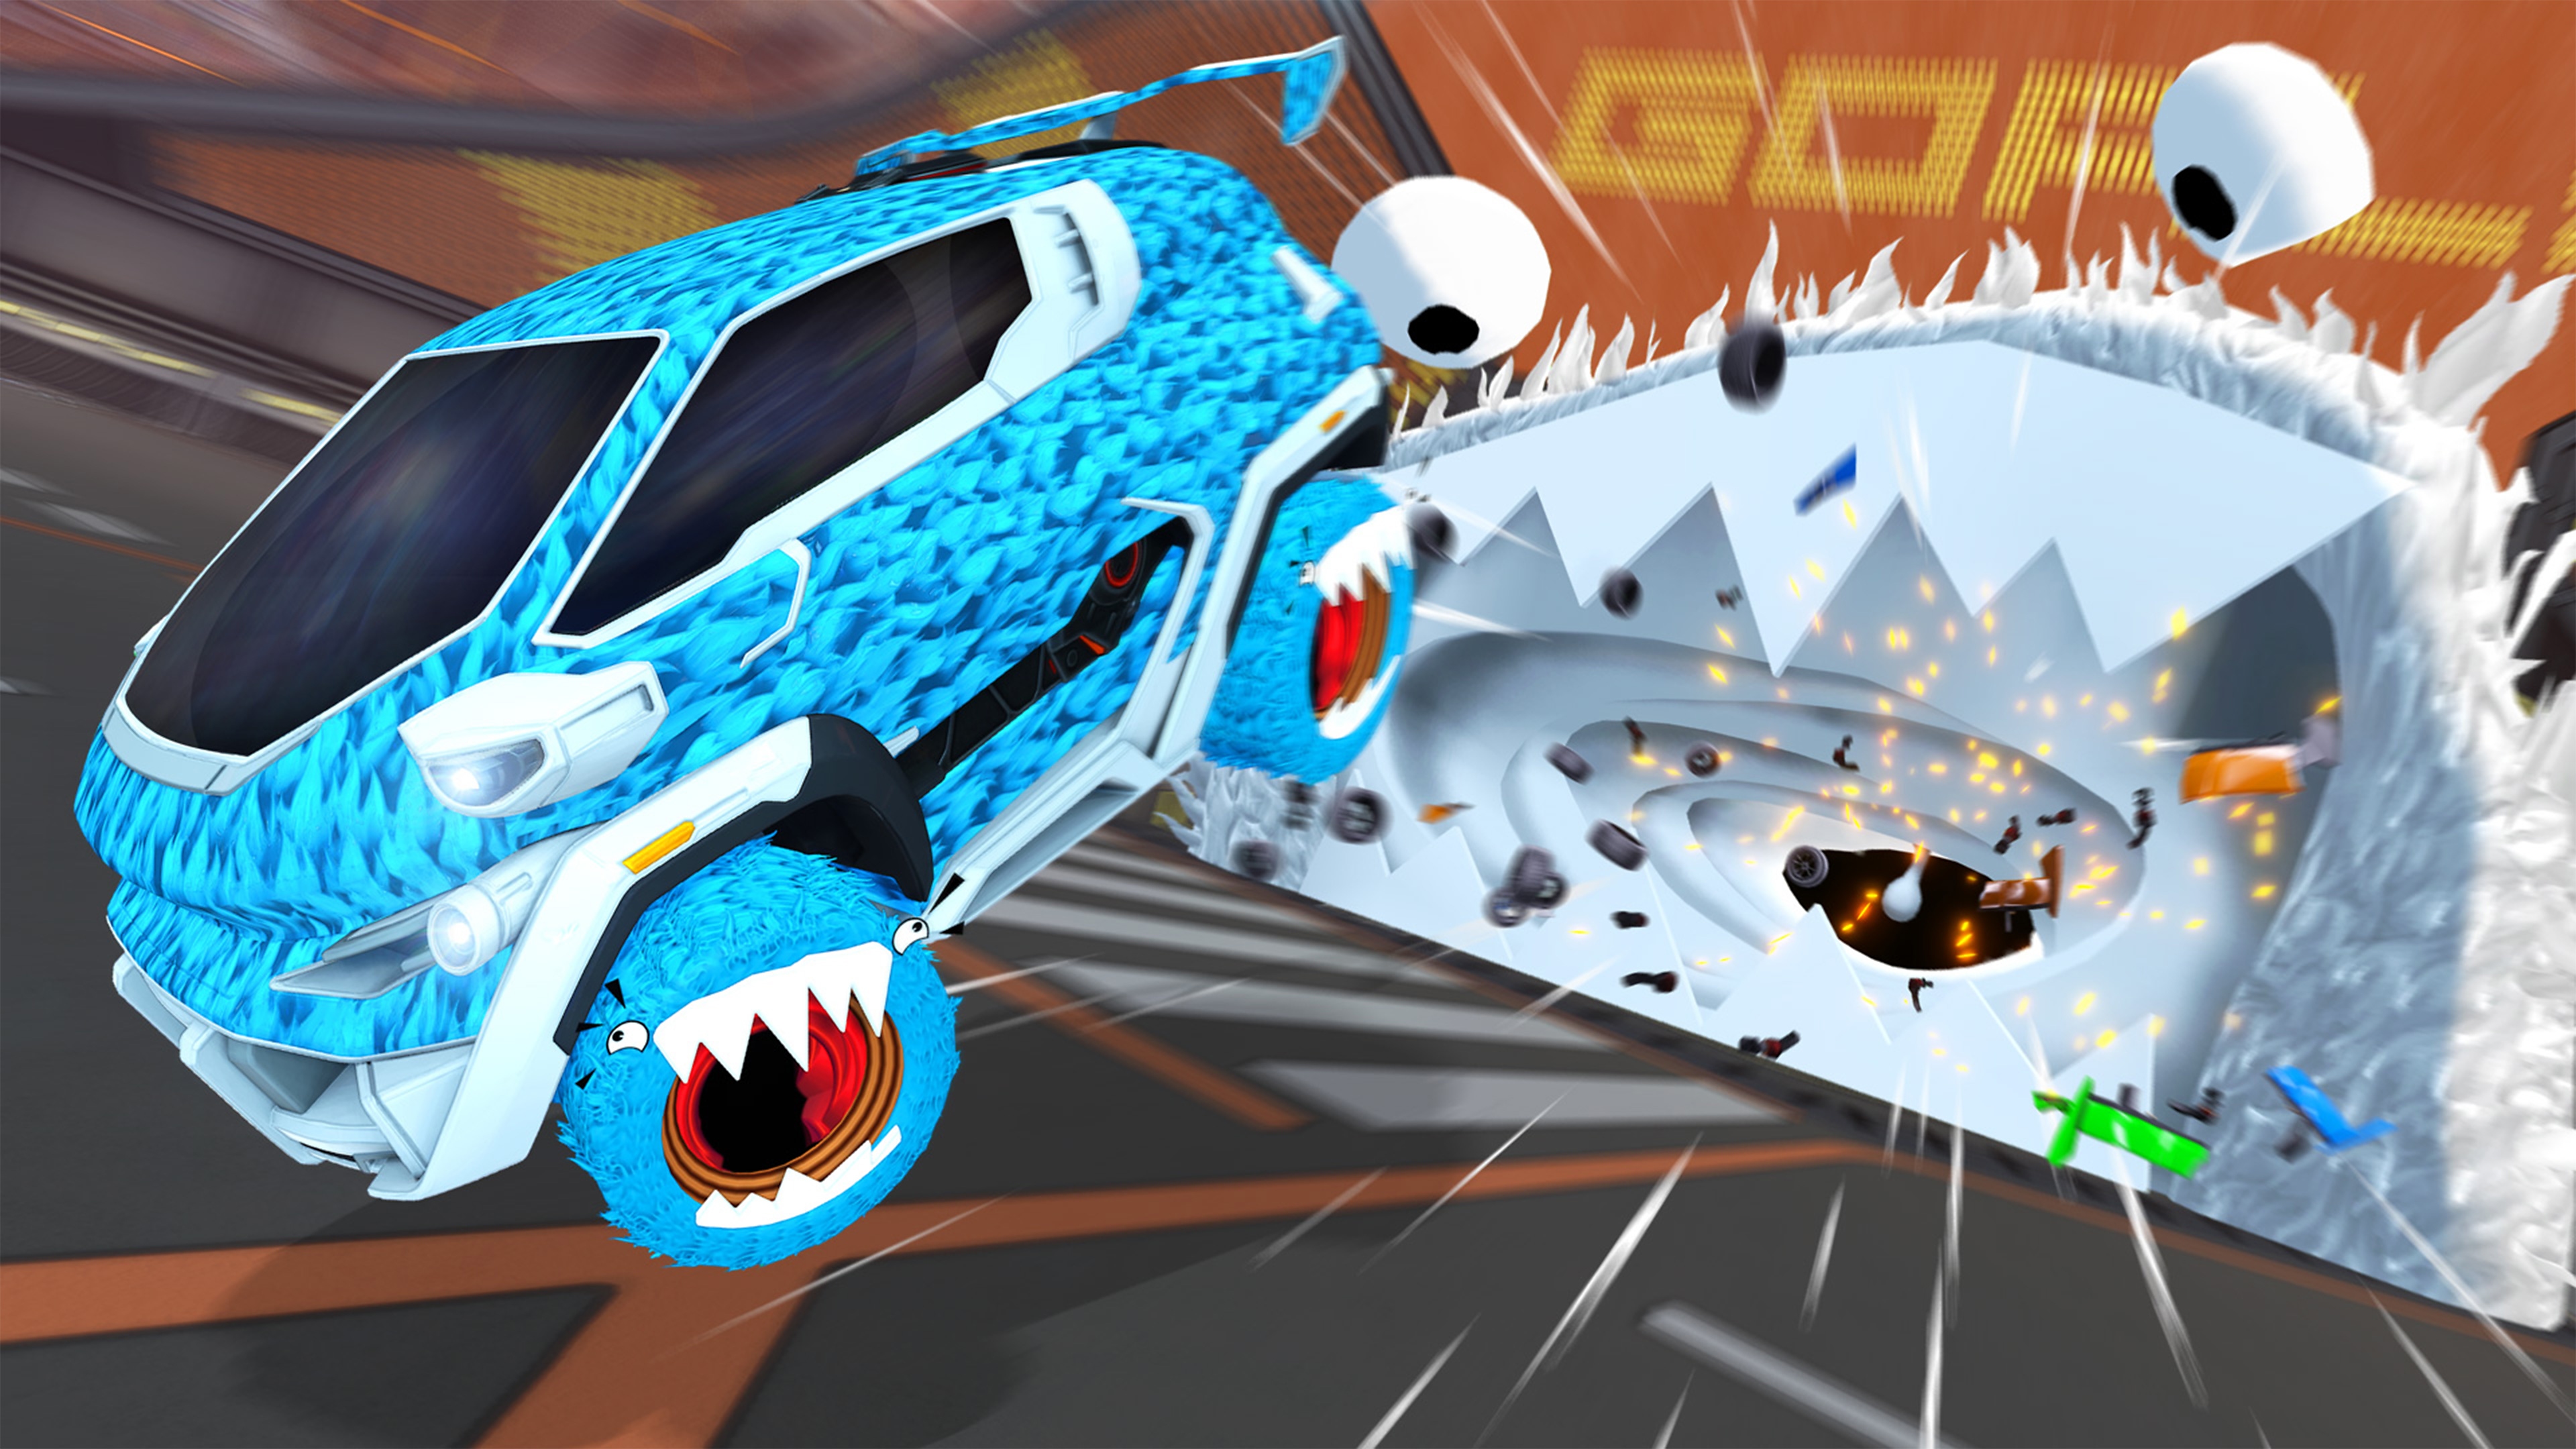 Rocket League koji prikazuje plavi automobil sa farbom u obliku teksture krzna